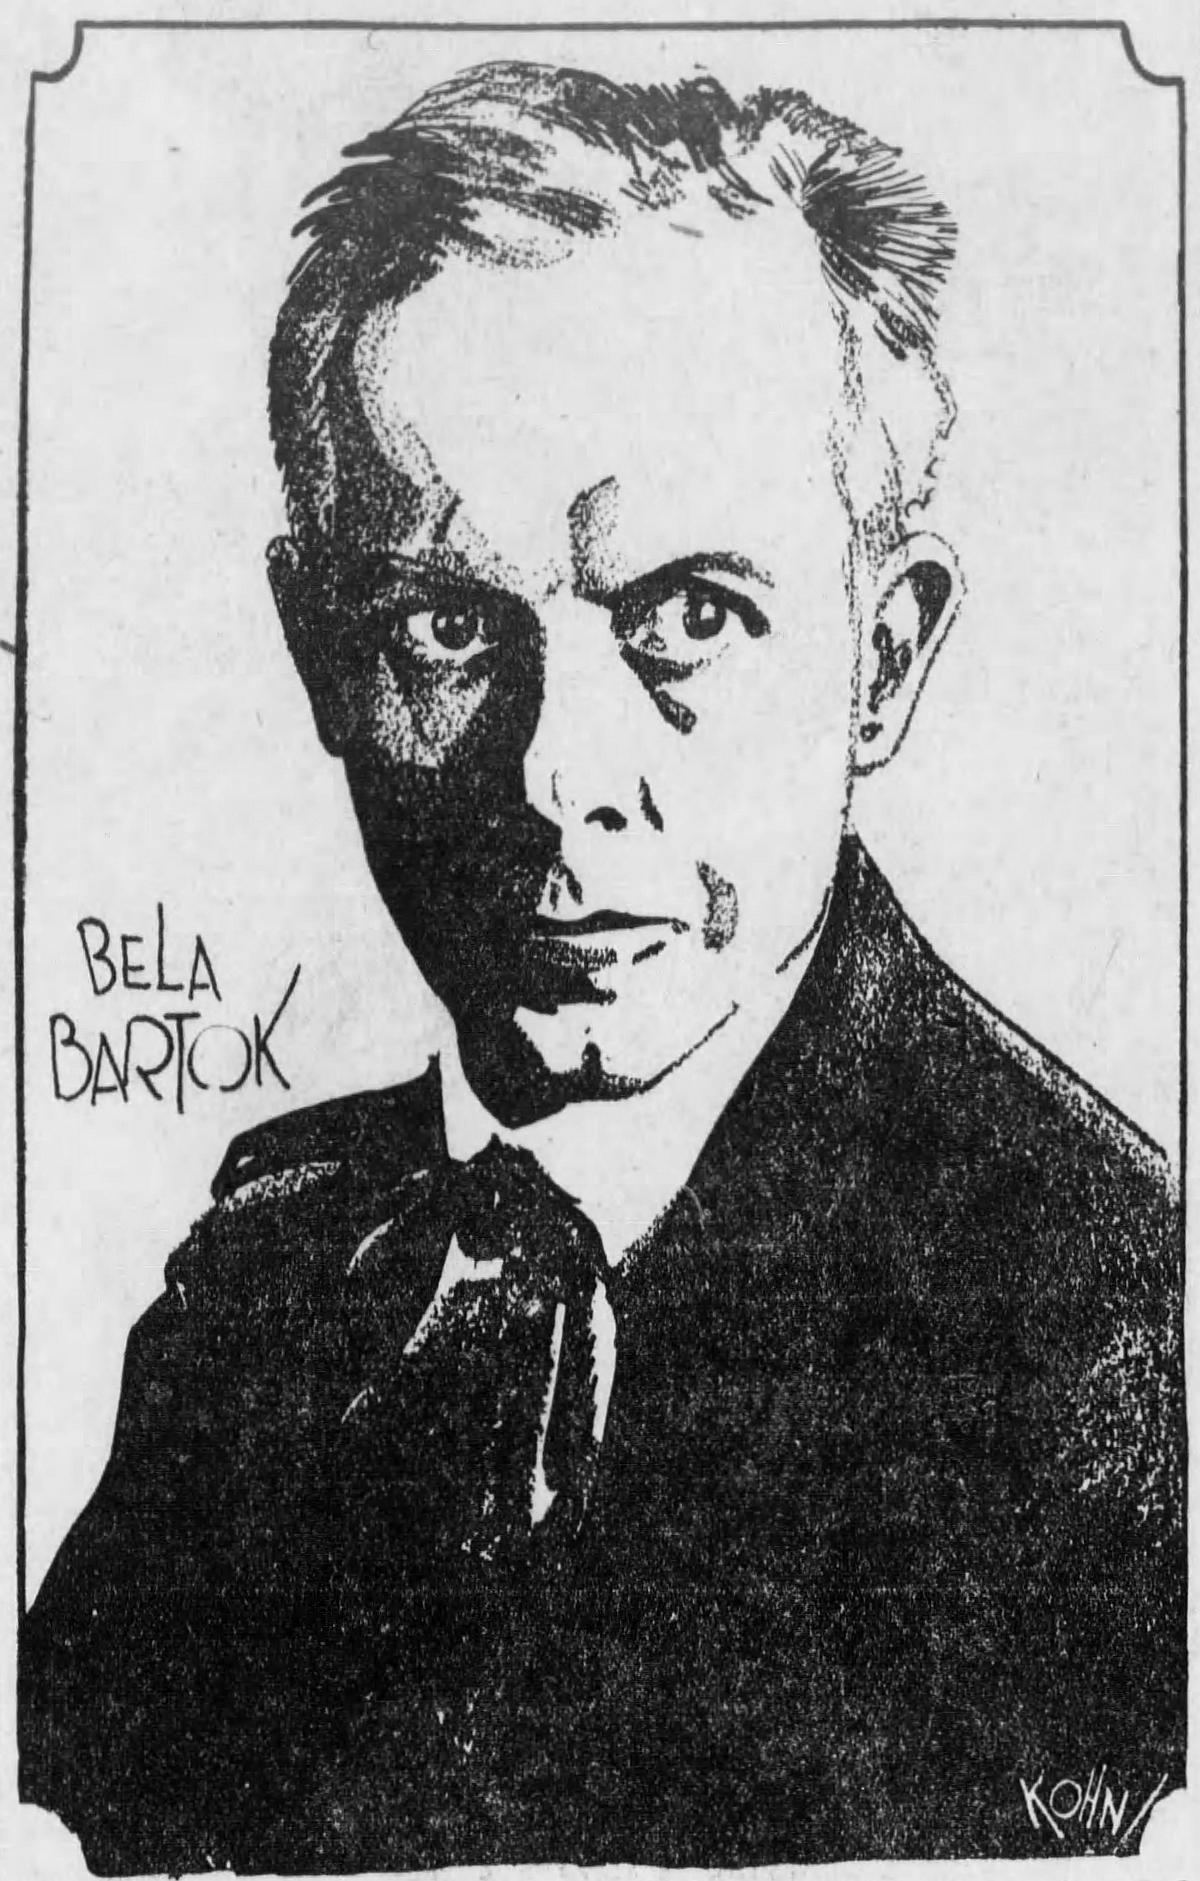 Portrait de Bela BARTOK - graphiste KOHN - paru dans le The Cincinnati Enquirer du dimanche 19 février 1928, à l'occasion de concerts donné par Bela Bartok avec le Cincinnati Symphony Orchestra les 24 et 25 février 1928, cliquer pour une vue agrandie